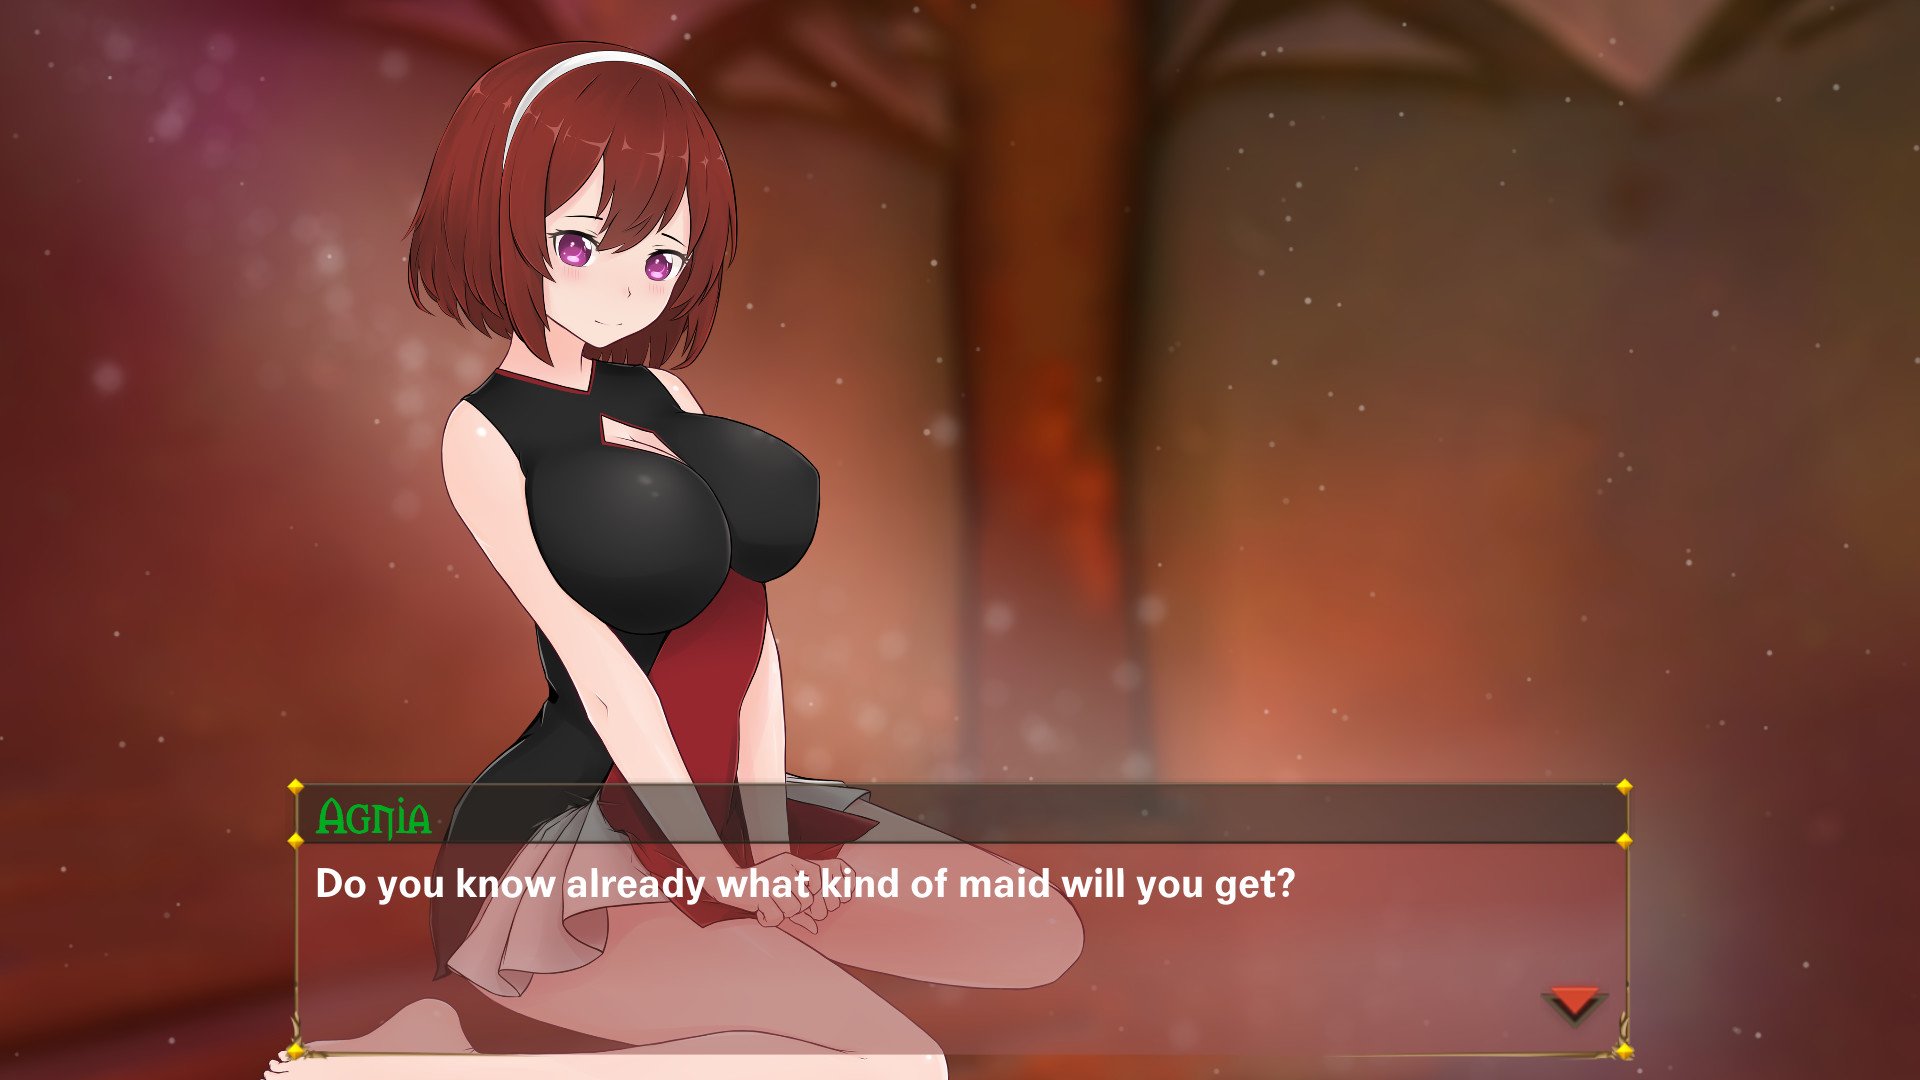 Hentai Anime Cat Girls Naked - CATGIRL LOVER 2 on Steam